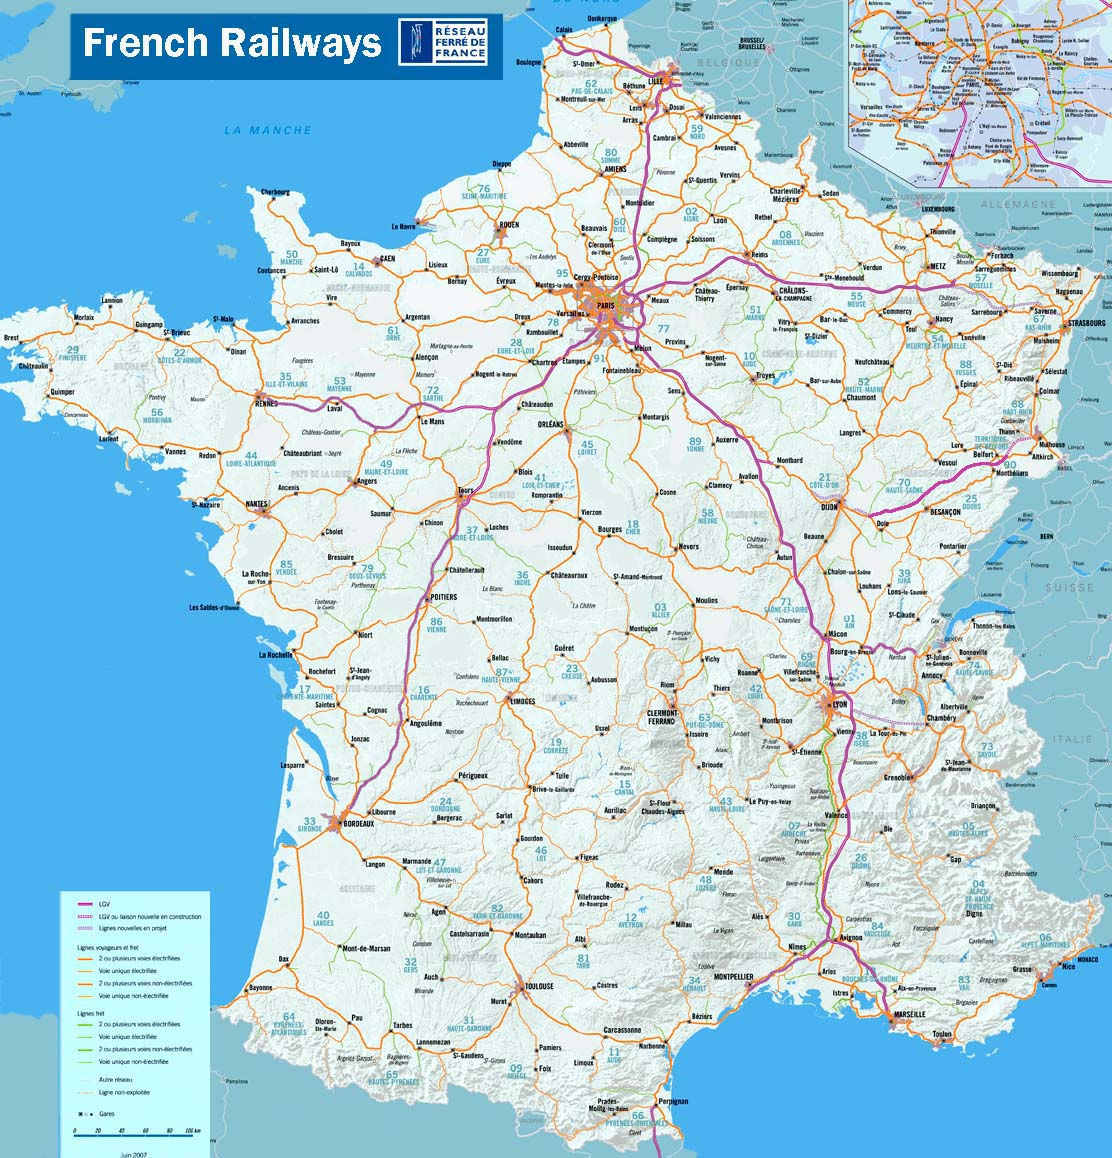  /><br/><p>France Route Map</p></center></div>
<script type='text/javascript'>
var obj0=document.getElementById(